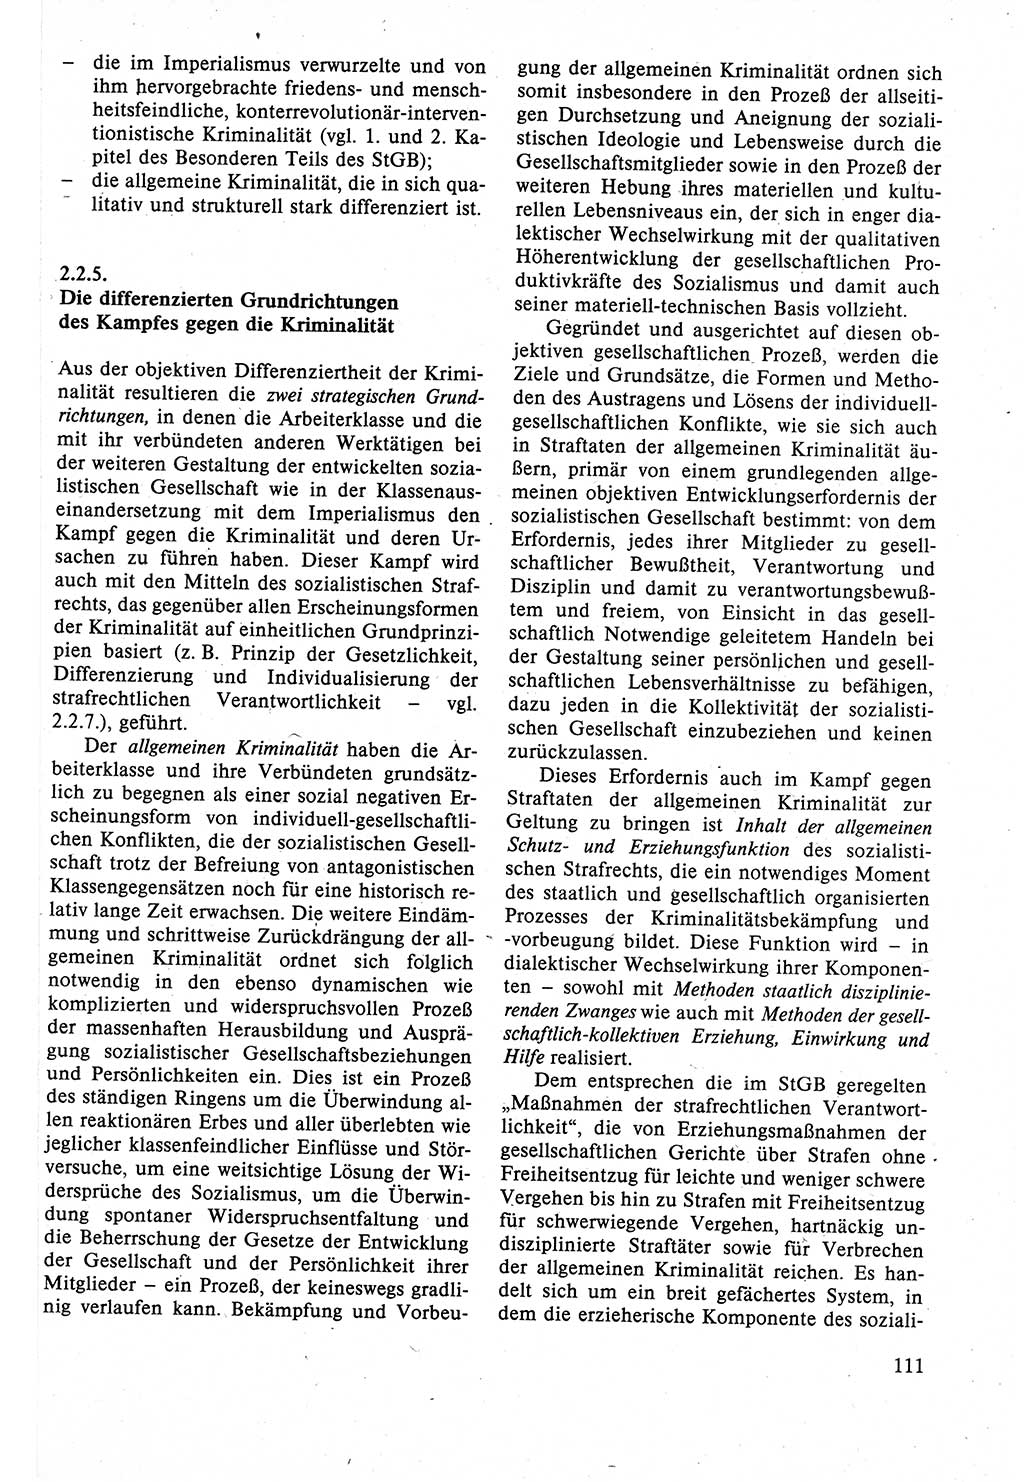 Strafrecht der DDR (Deutsche Demokratische Republik), Lehrbuch 1988, Seite 111 (Strafr. DDR Lb. 1988, S. 111)